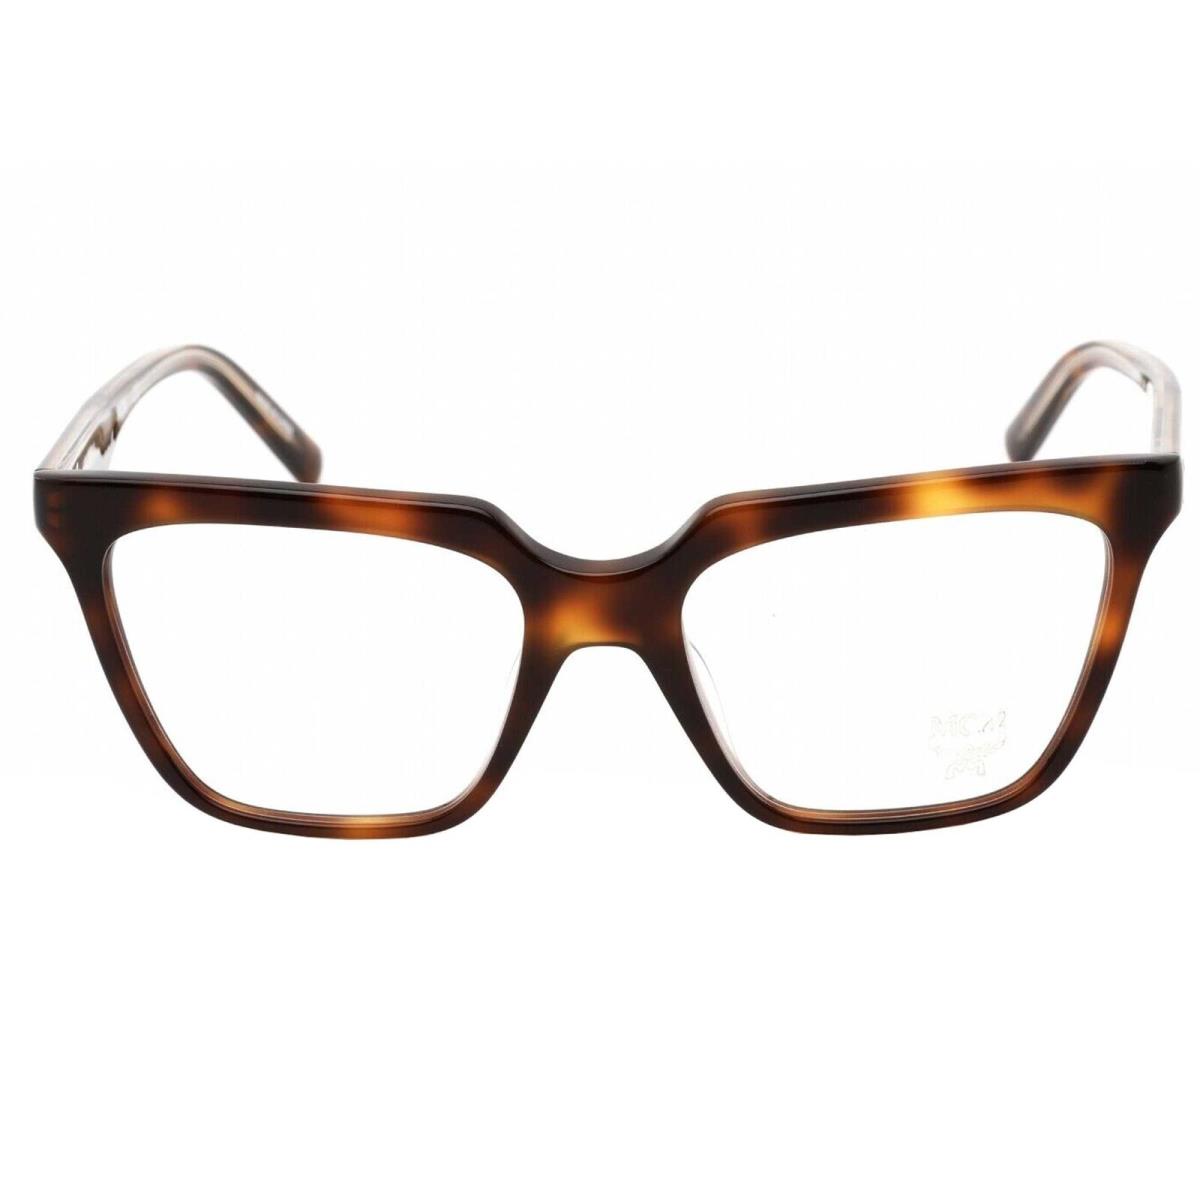 Mcm Women`s Eyeglasses Havana Square Full-rim Frame Clear Lens MCM2716 214